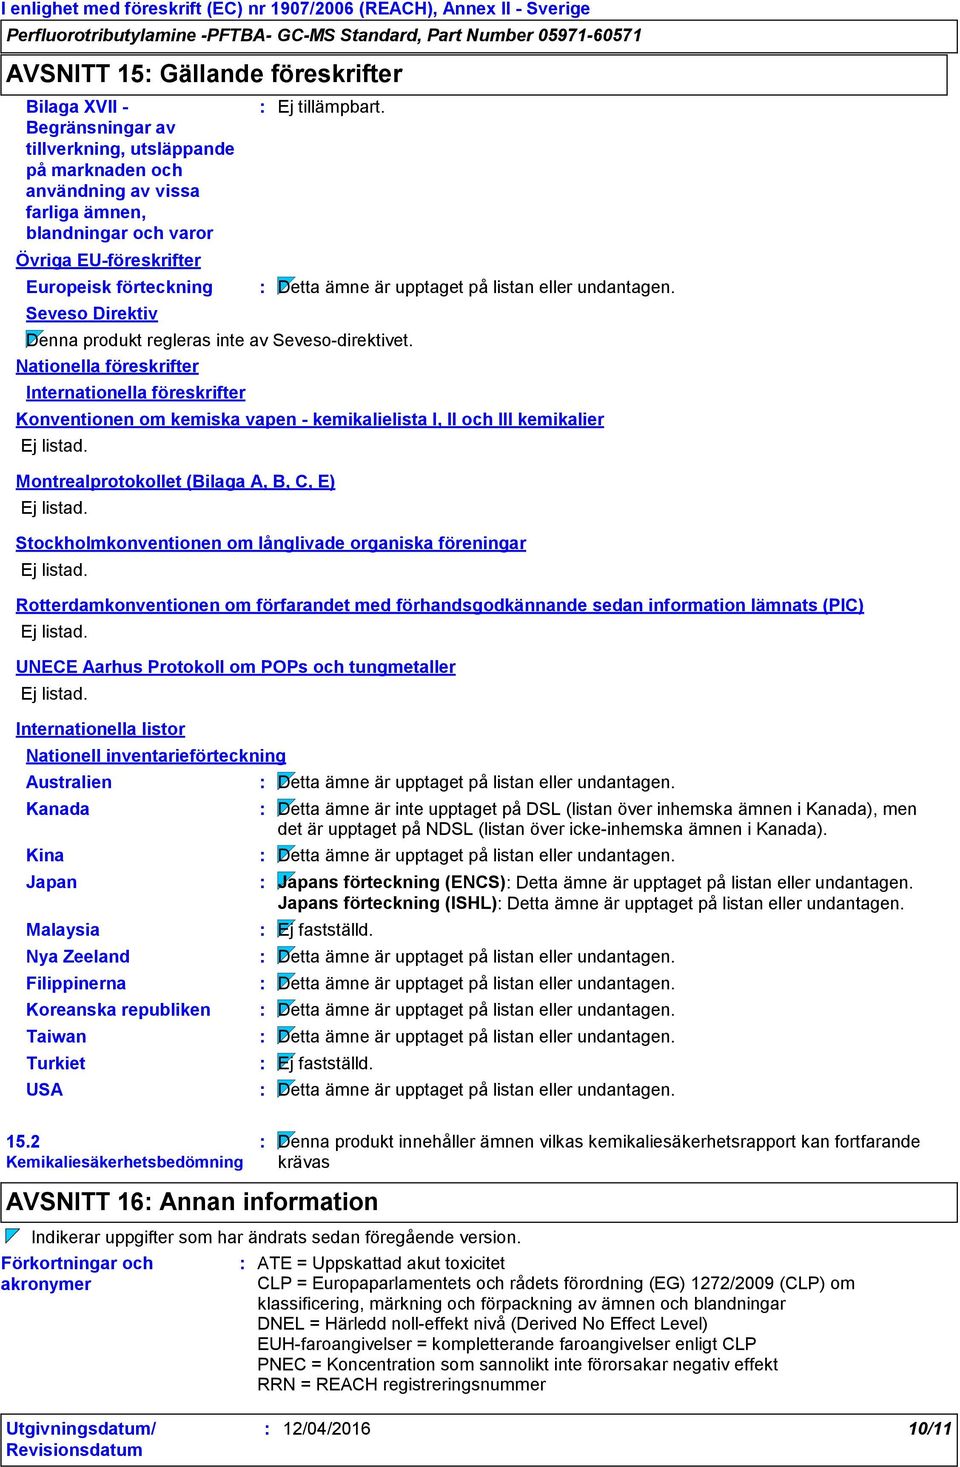 Konventionen om kemiska vapen - kemikalielista I, II och III kemikalier Ej listad. Montrealprotokollet (Bilaga A, B, C, E) Ej listad.